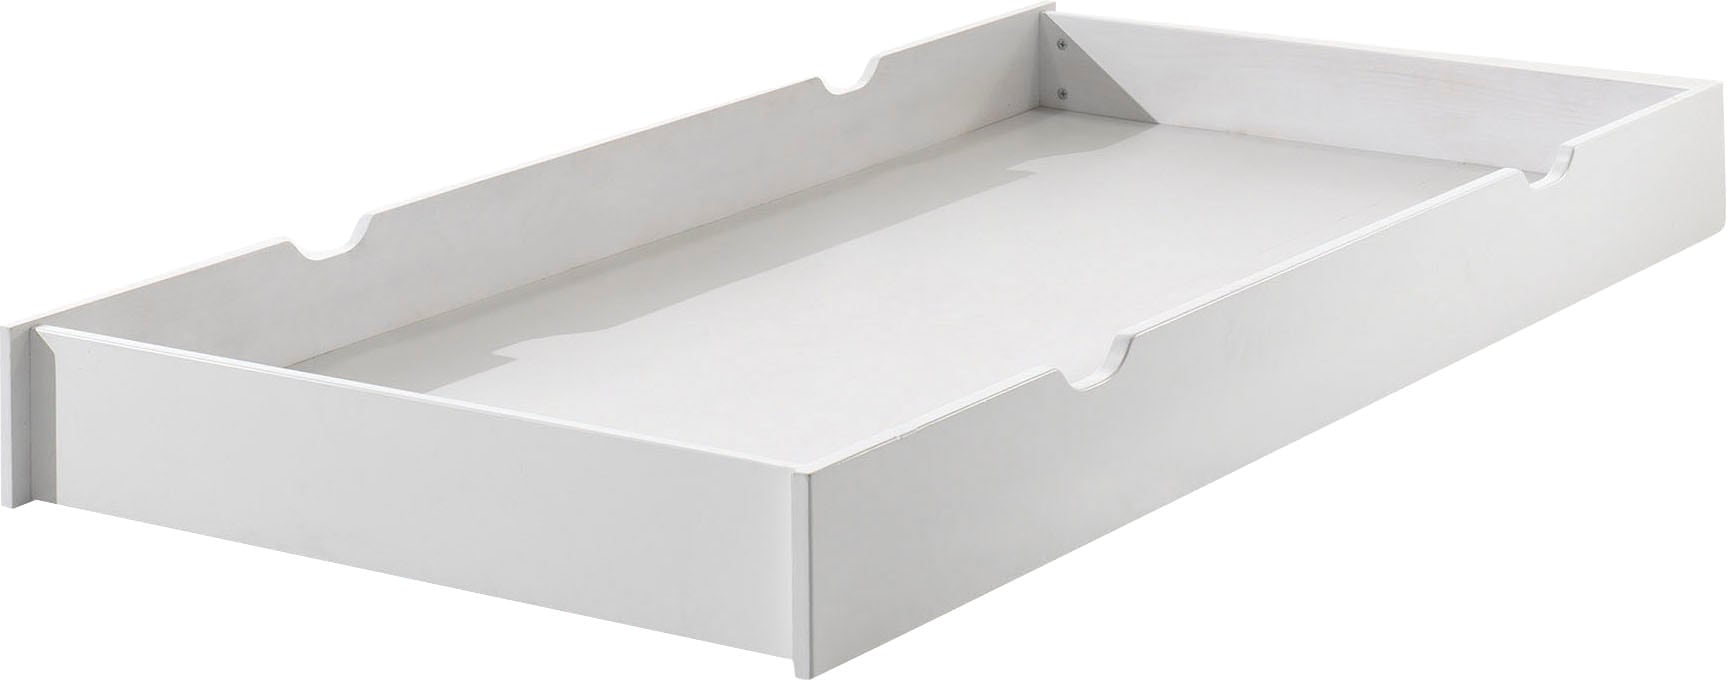 Vipack Bettschubkasten »ERIK«, mit Griffmulden, lackierte Oberfläche, leicht zu bedienen durch Rollen